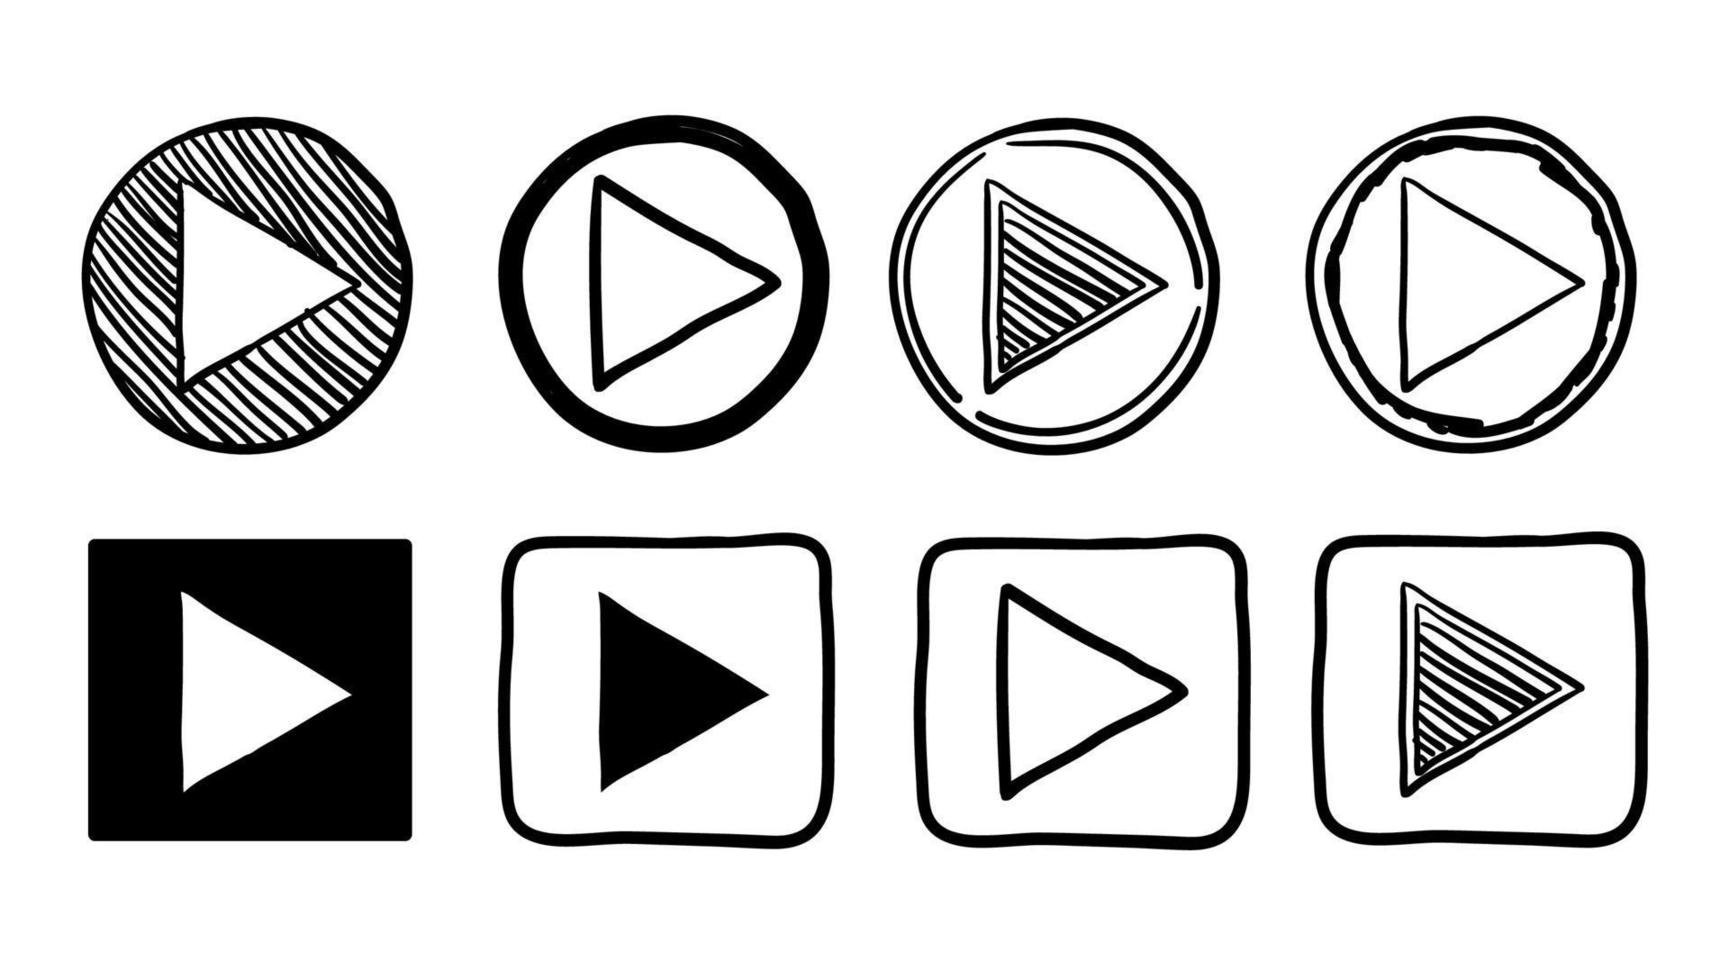 Sammlung von Player-Button-Symbolzeichen mit handgezeichnetem Doodle-Stil-Vektor vektor